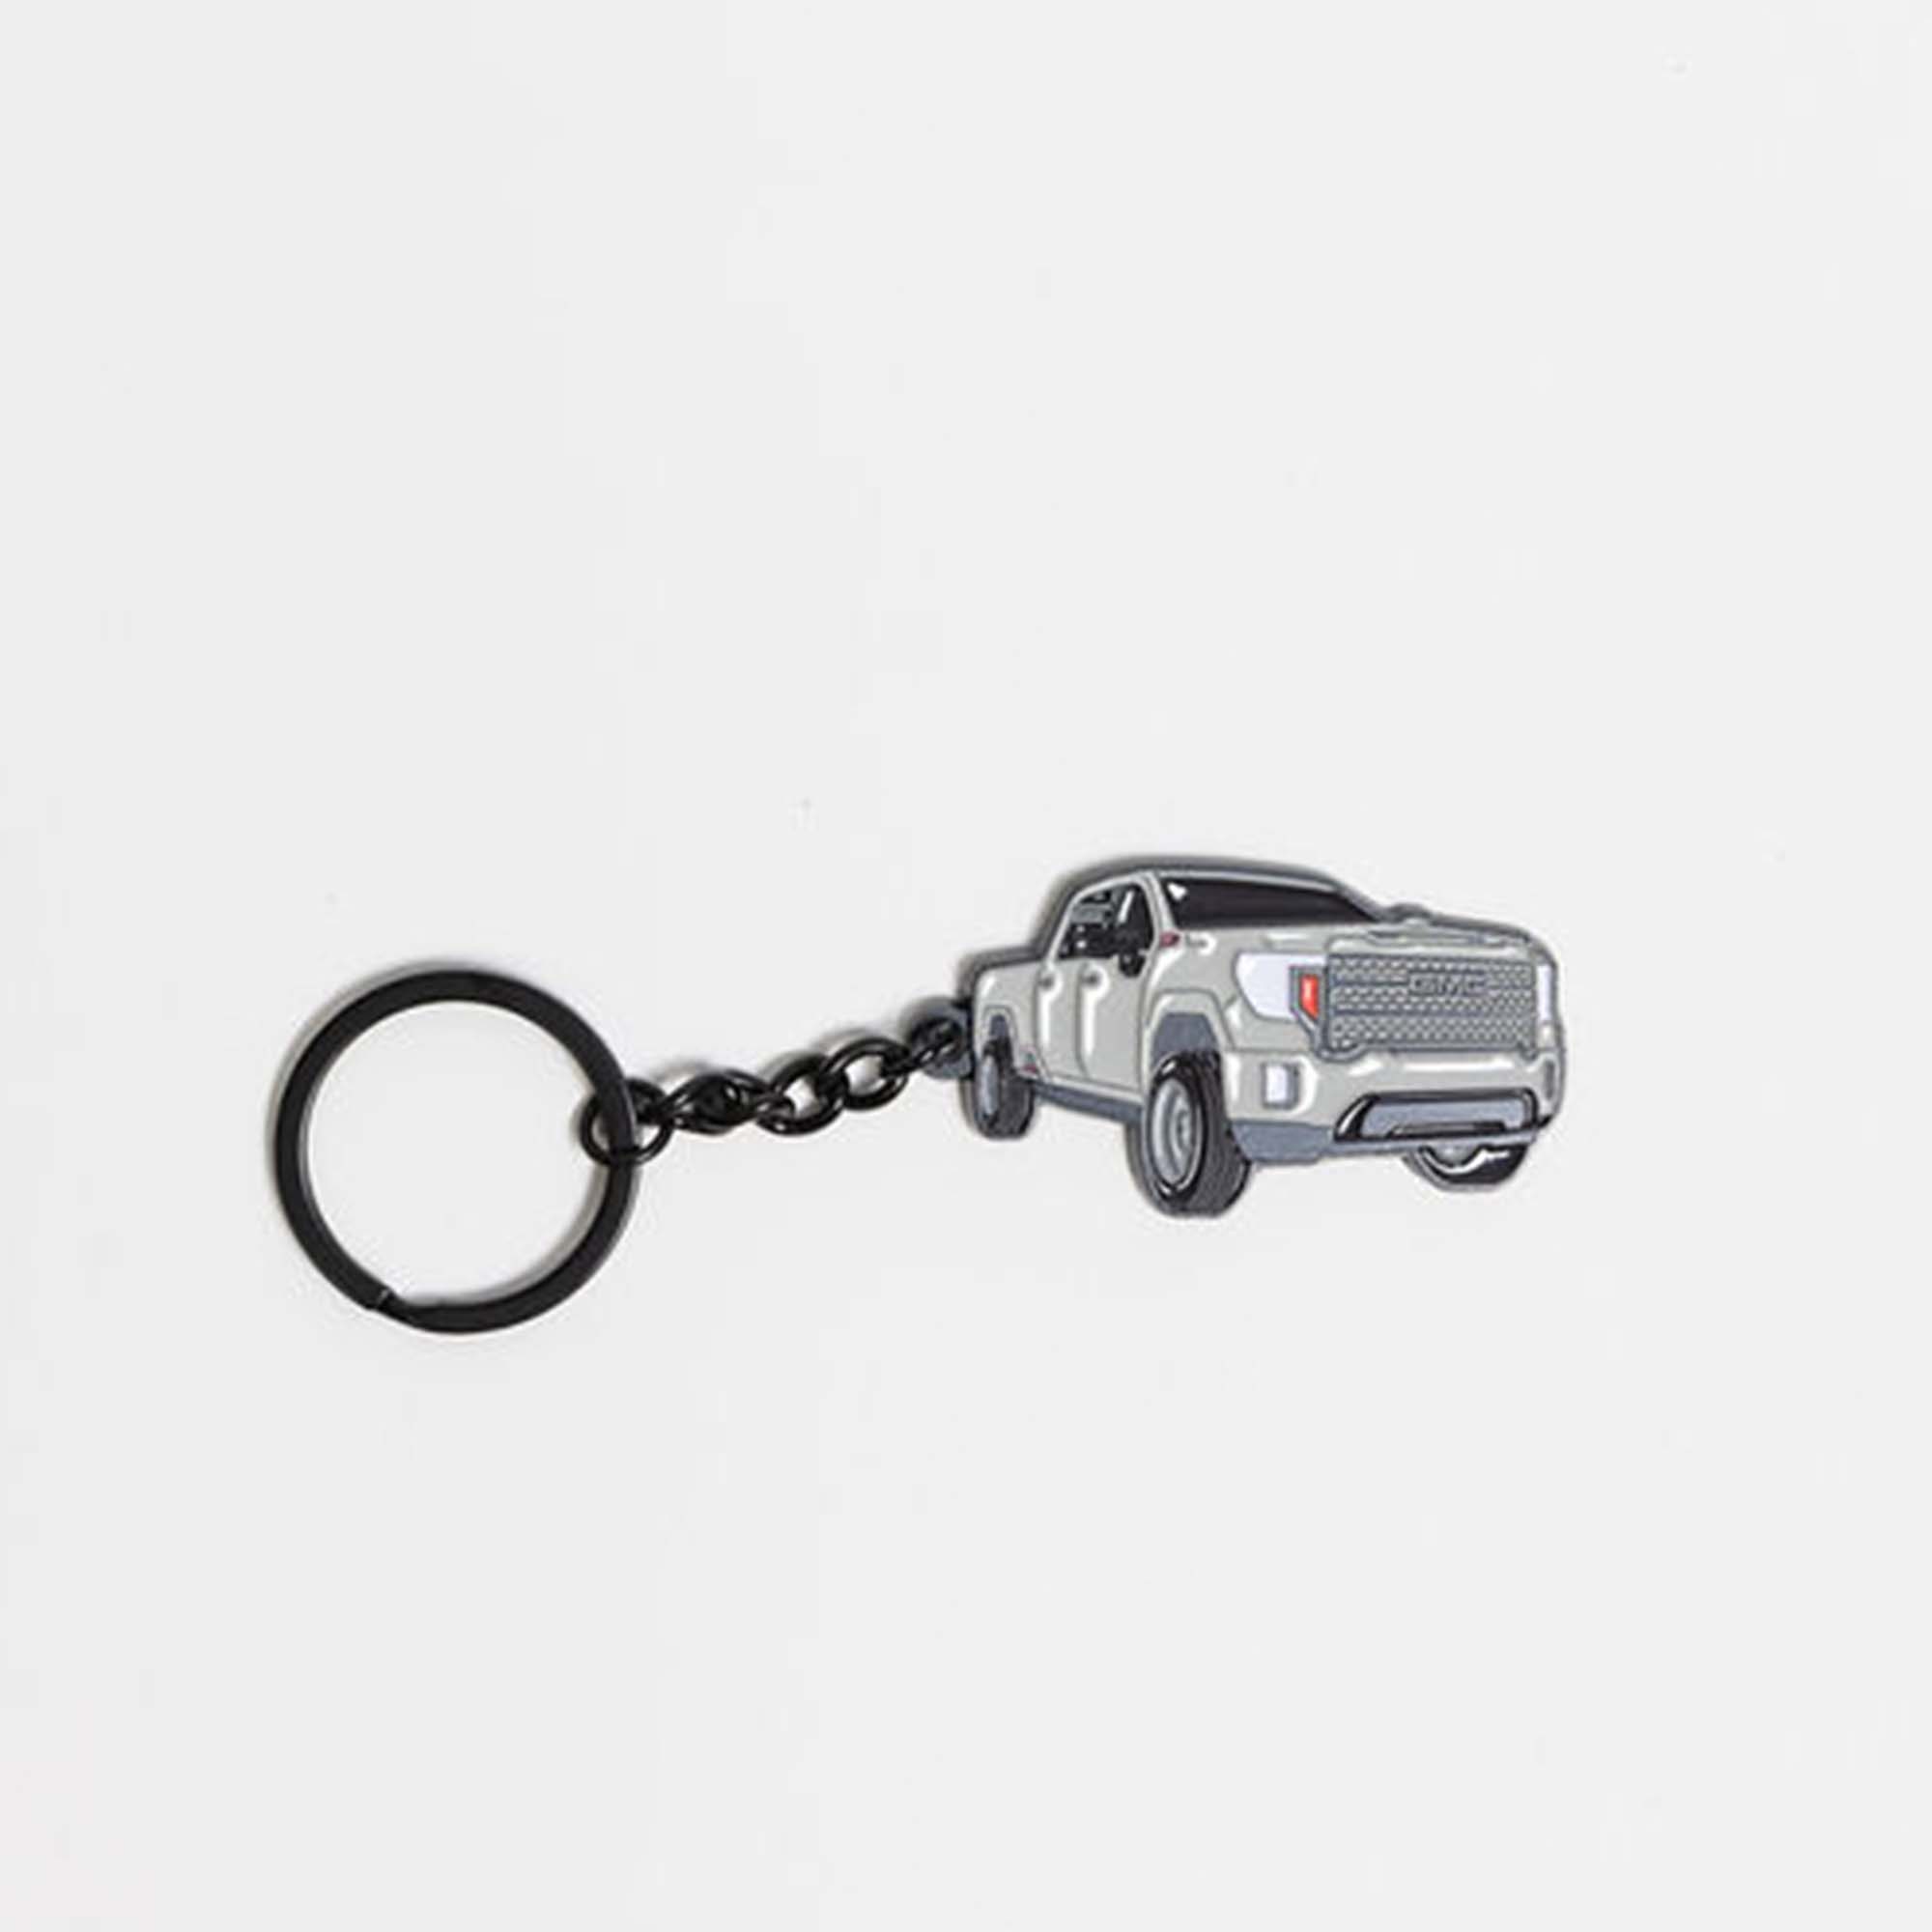 Truck keychain